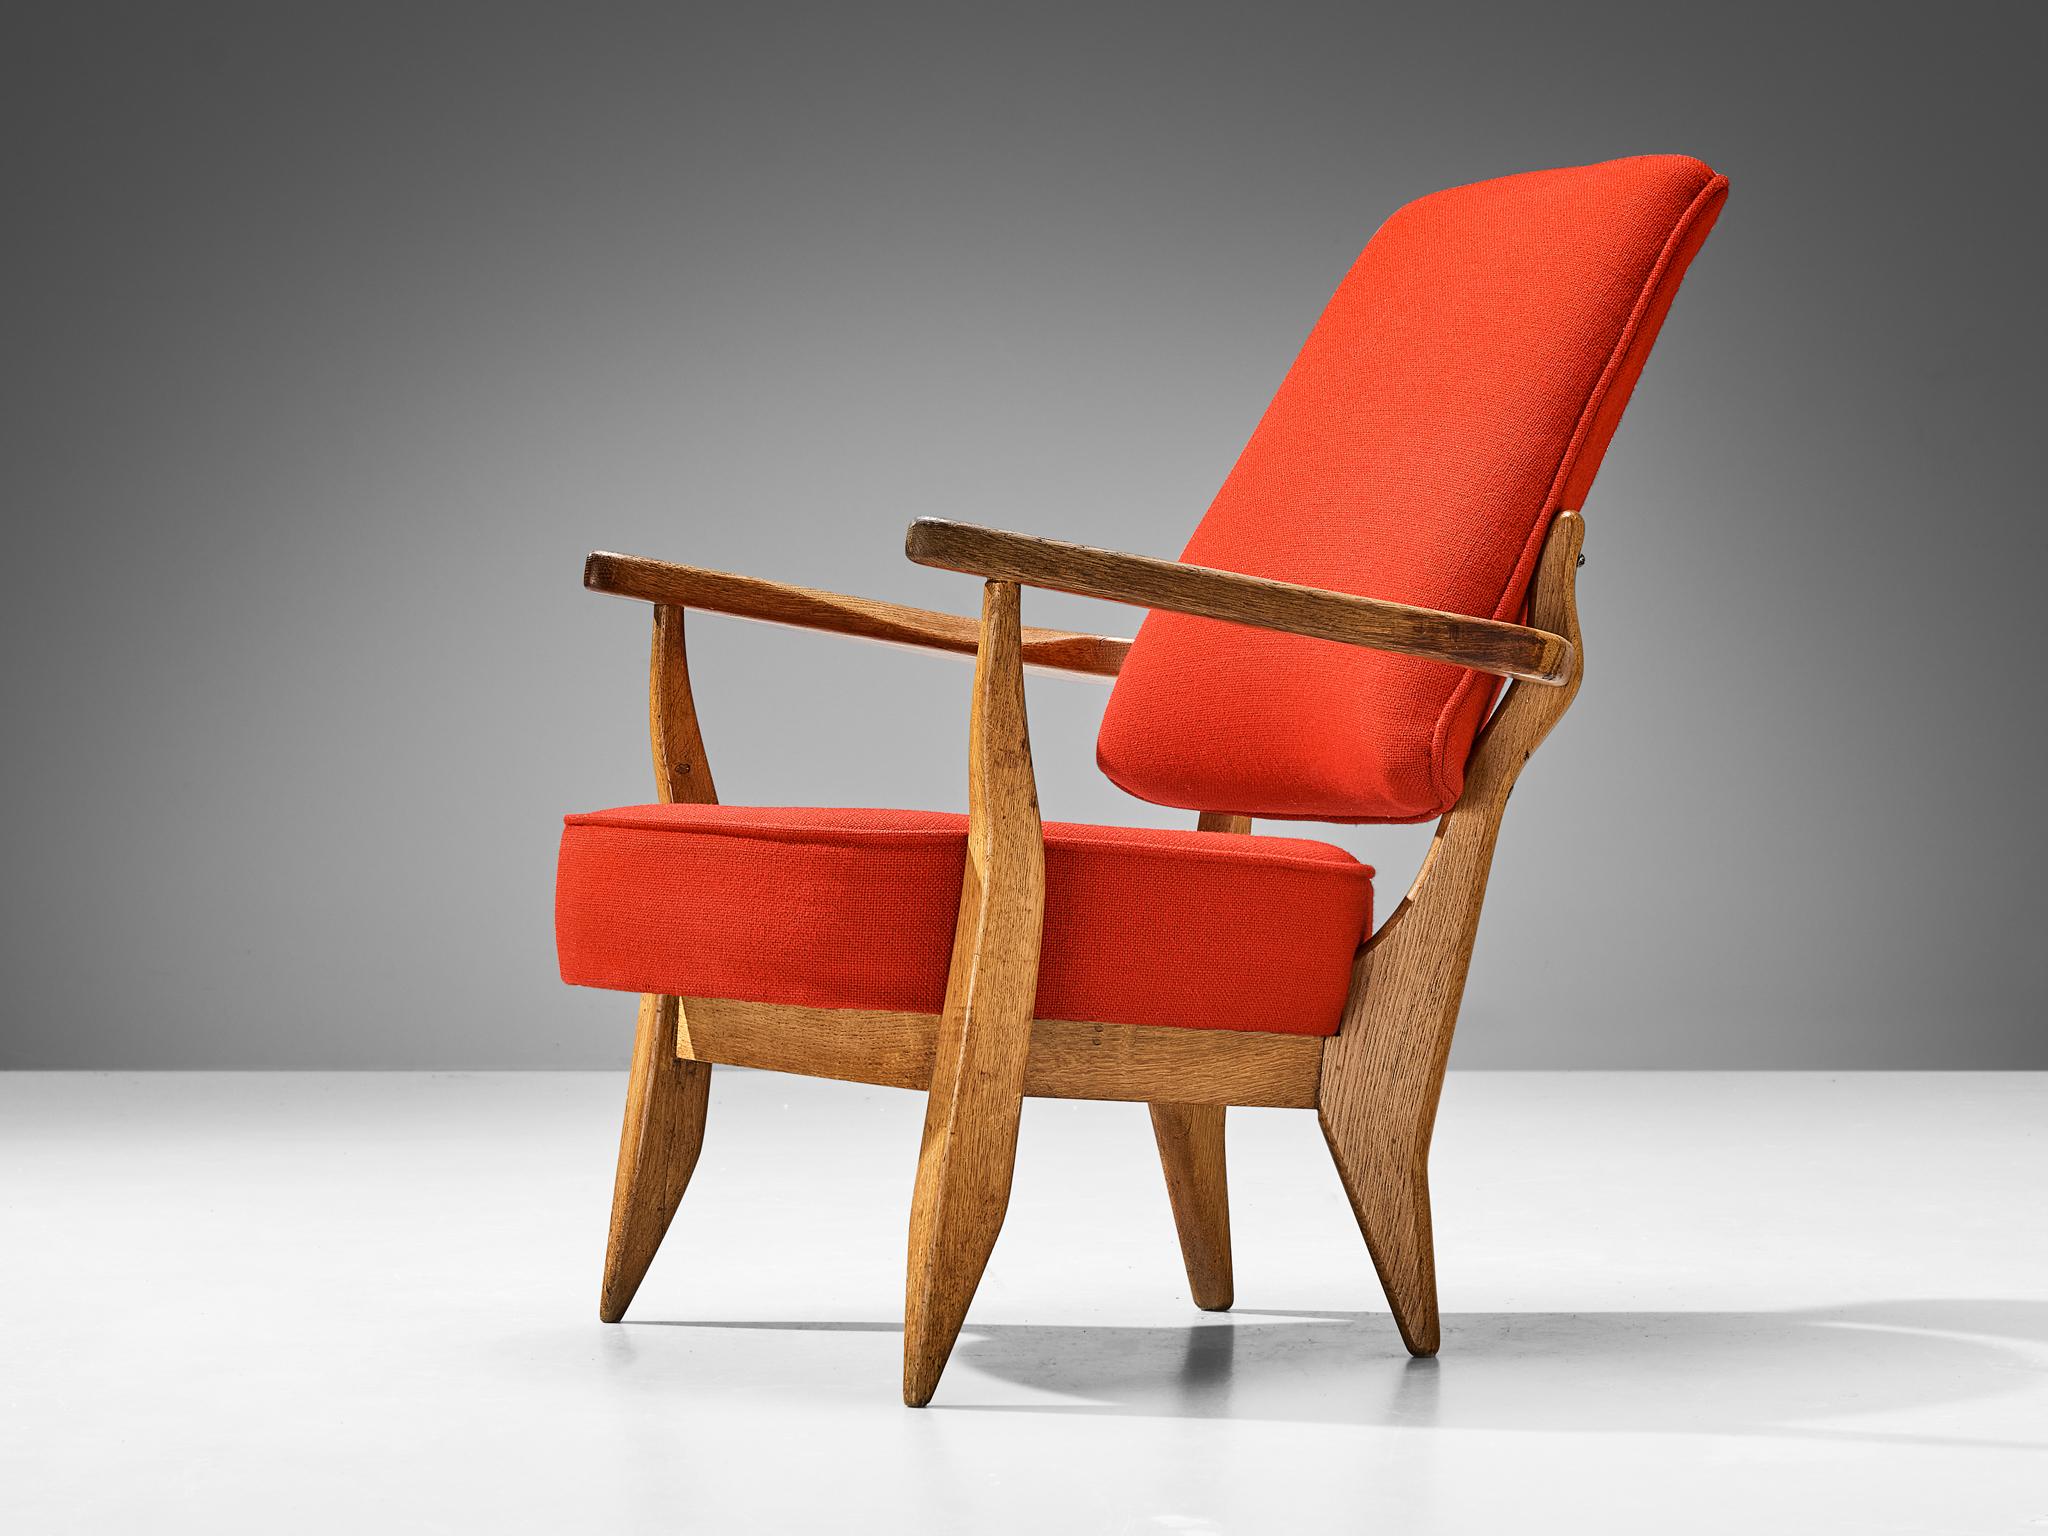 Guillerme et Chambron für Votre Maison, Sessel, roter Stoff, Eiche, Frankreich, 1960er Jahre 

Dieser skulpturale Sessel von Guillerme et Chambron ist sehr gut ausgeführt und aus massiver, geschnitzter Eiche gefertigt. Der äußerst bequeme Sessel